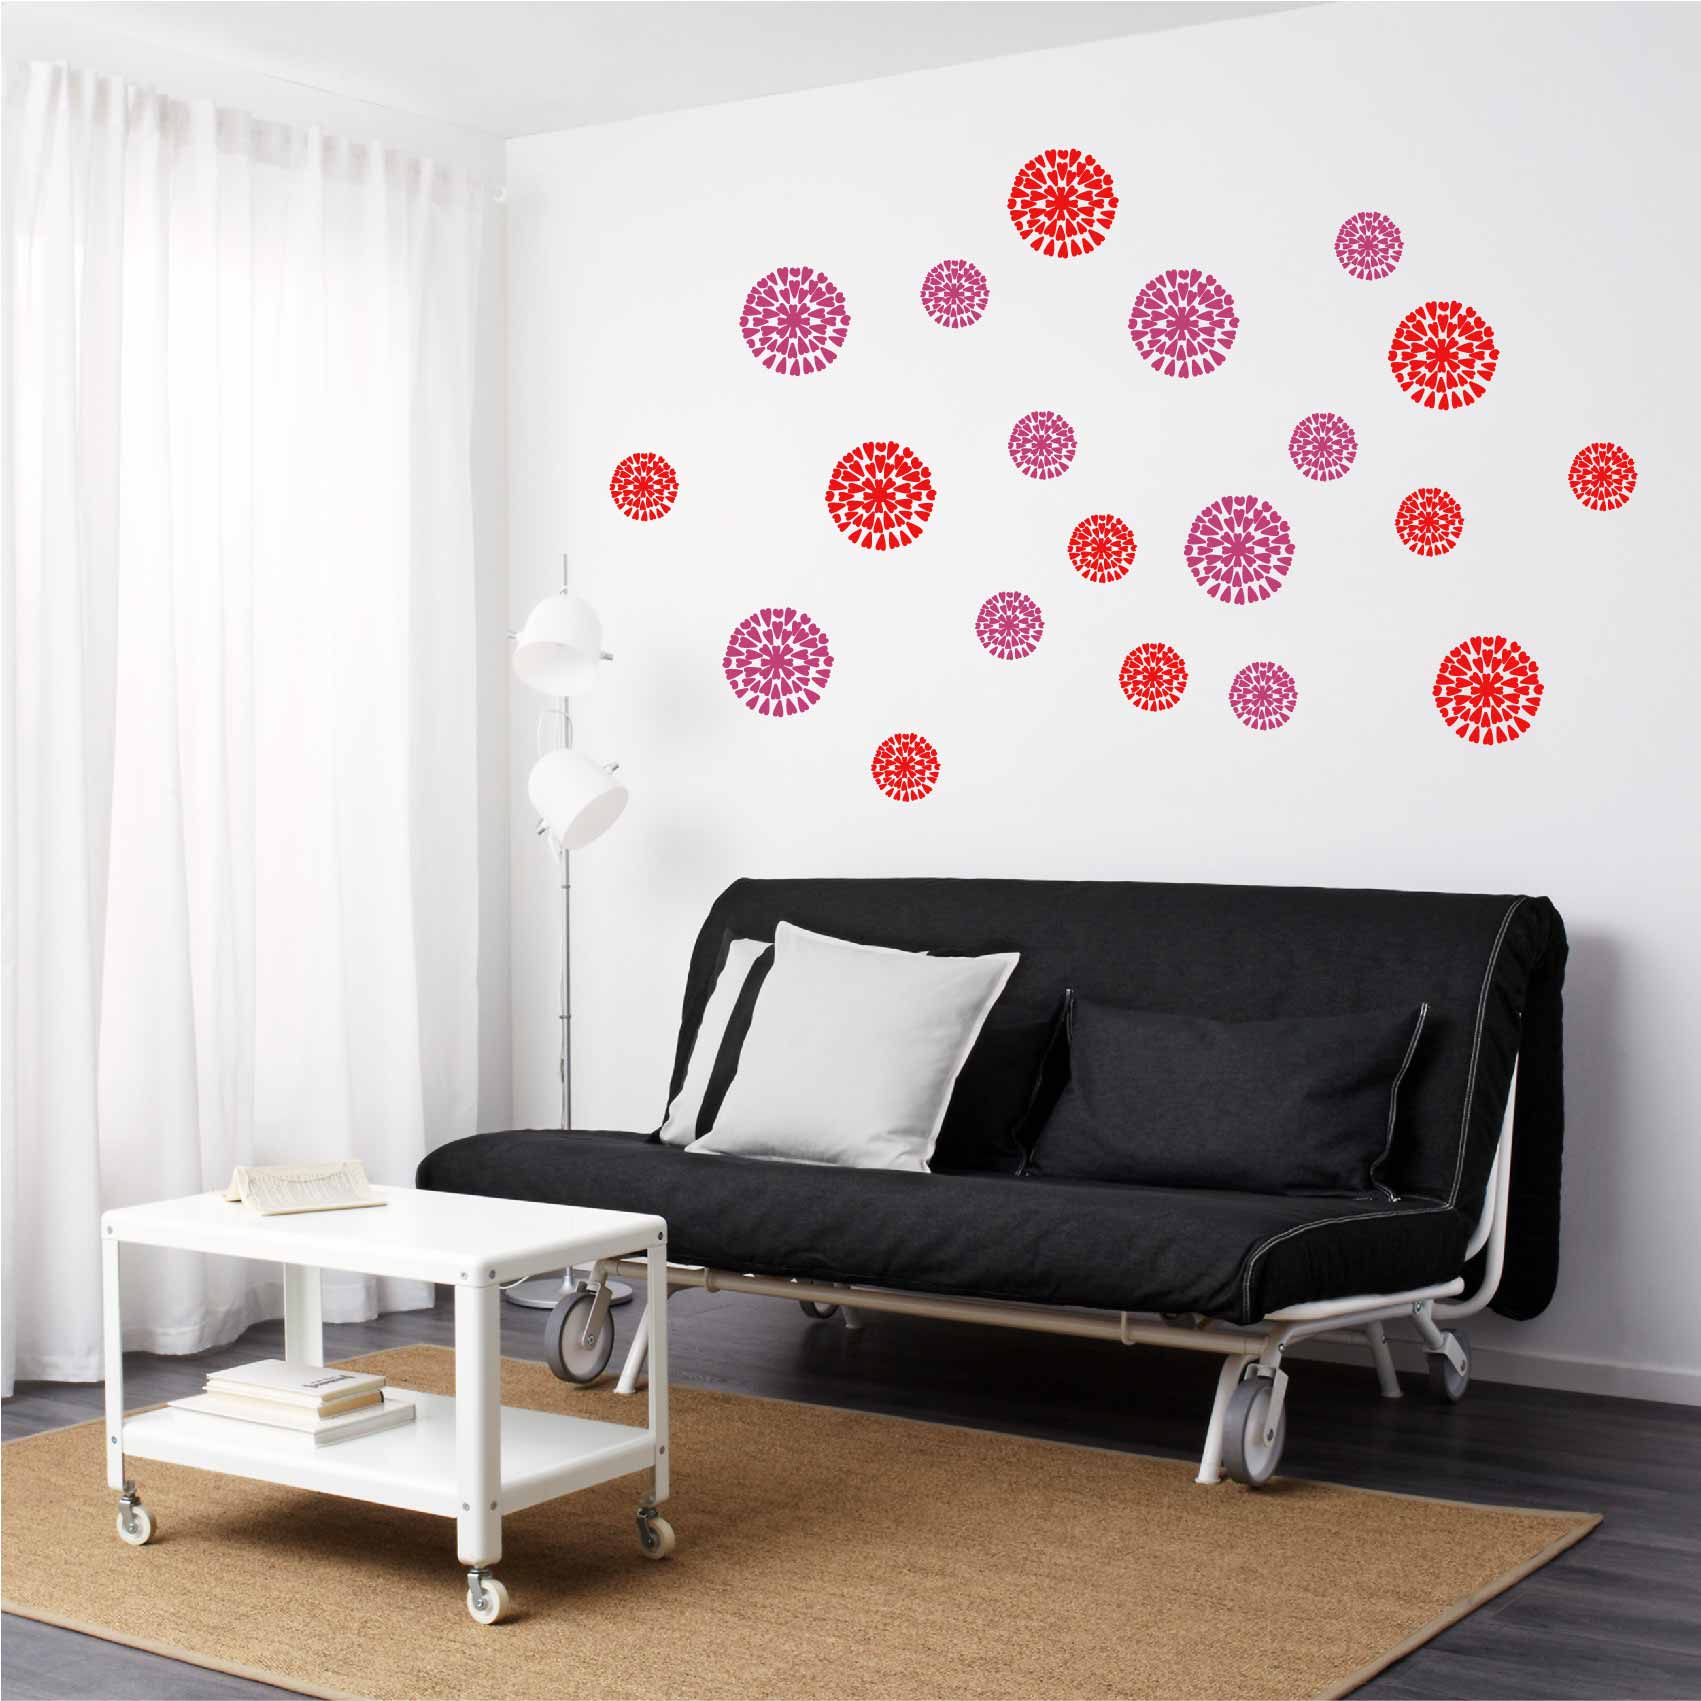 stickers-fleurs-coeurs-ref19fleur-stickers-muraux-fleurs-autocollant-deco-salon-chambre-nature-sticker-mural-fleur